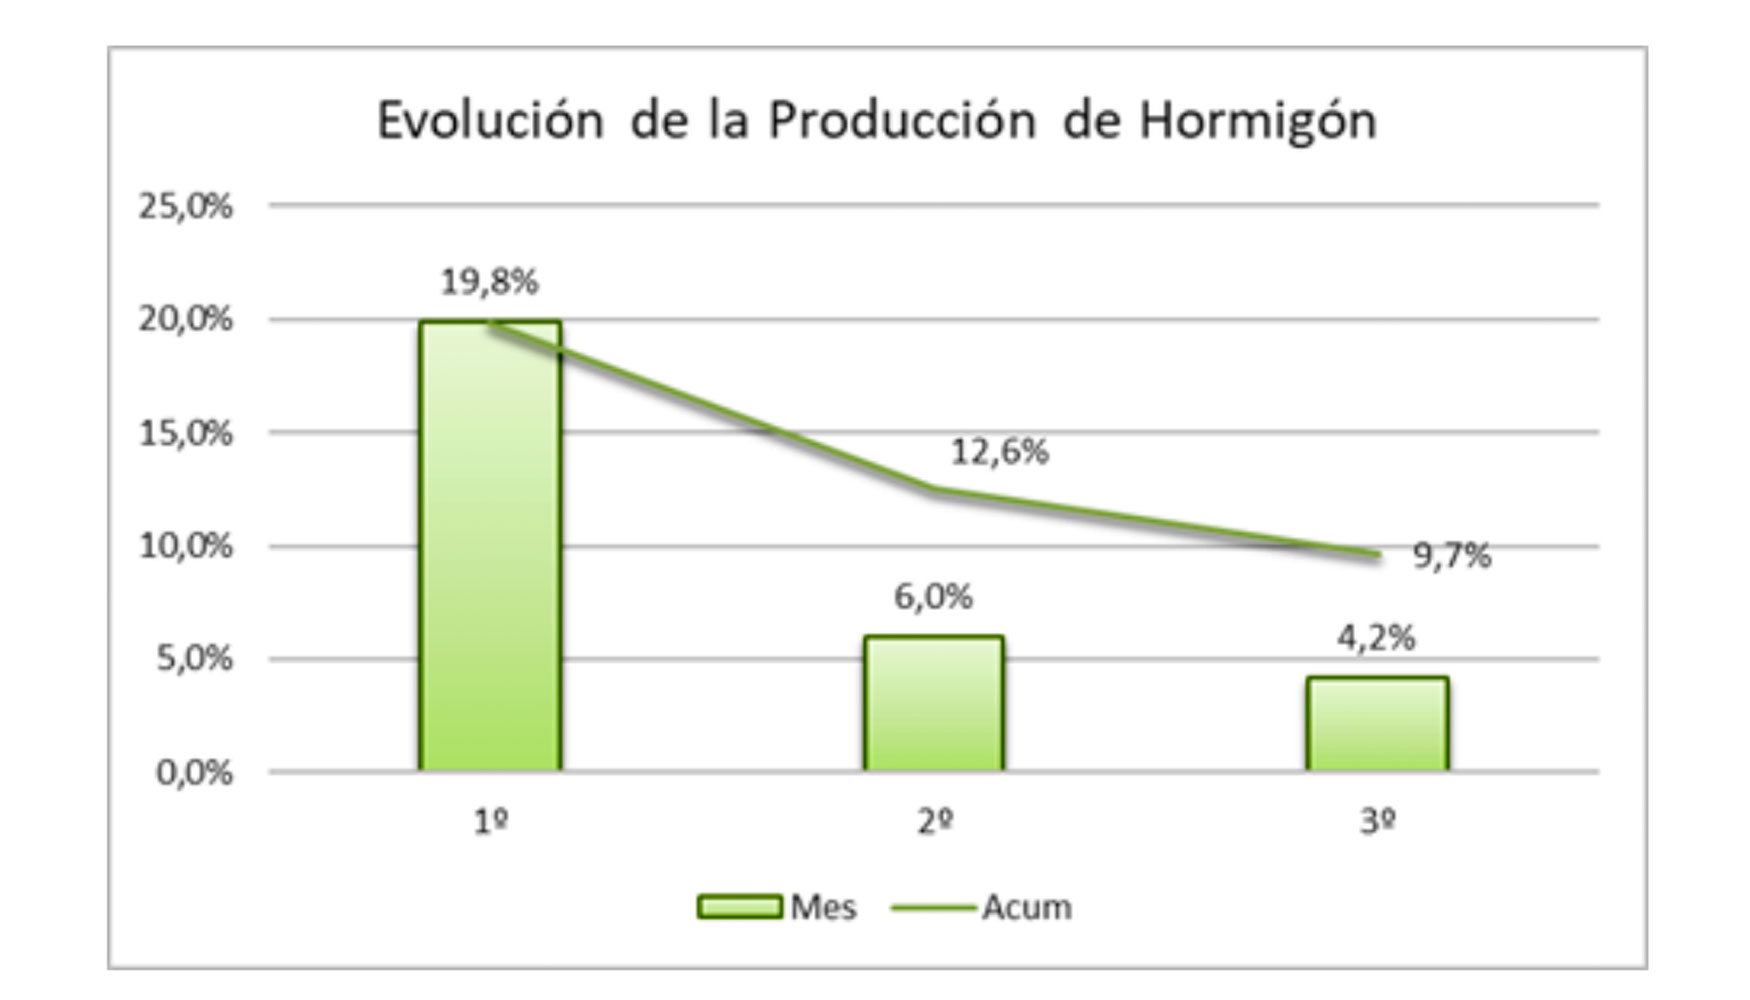 Evolucin de la produccin de hormign en 2019. Fuente: Anefhop